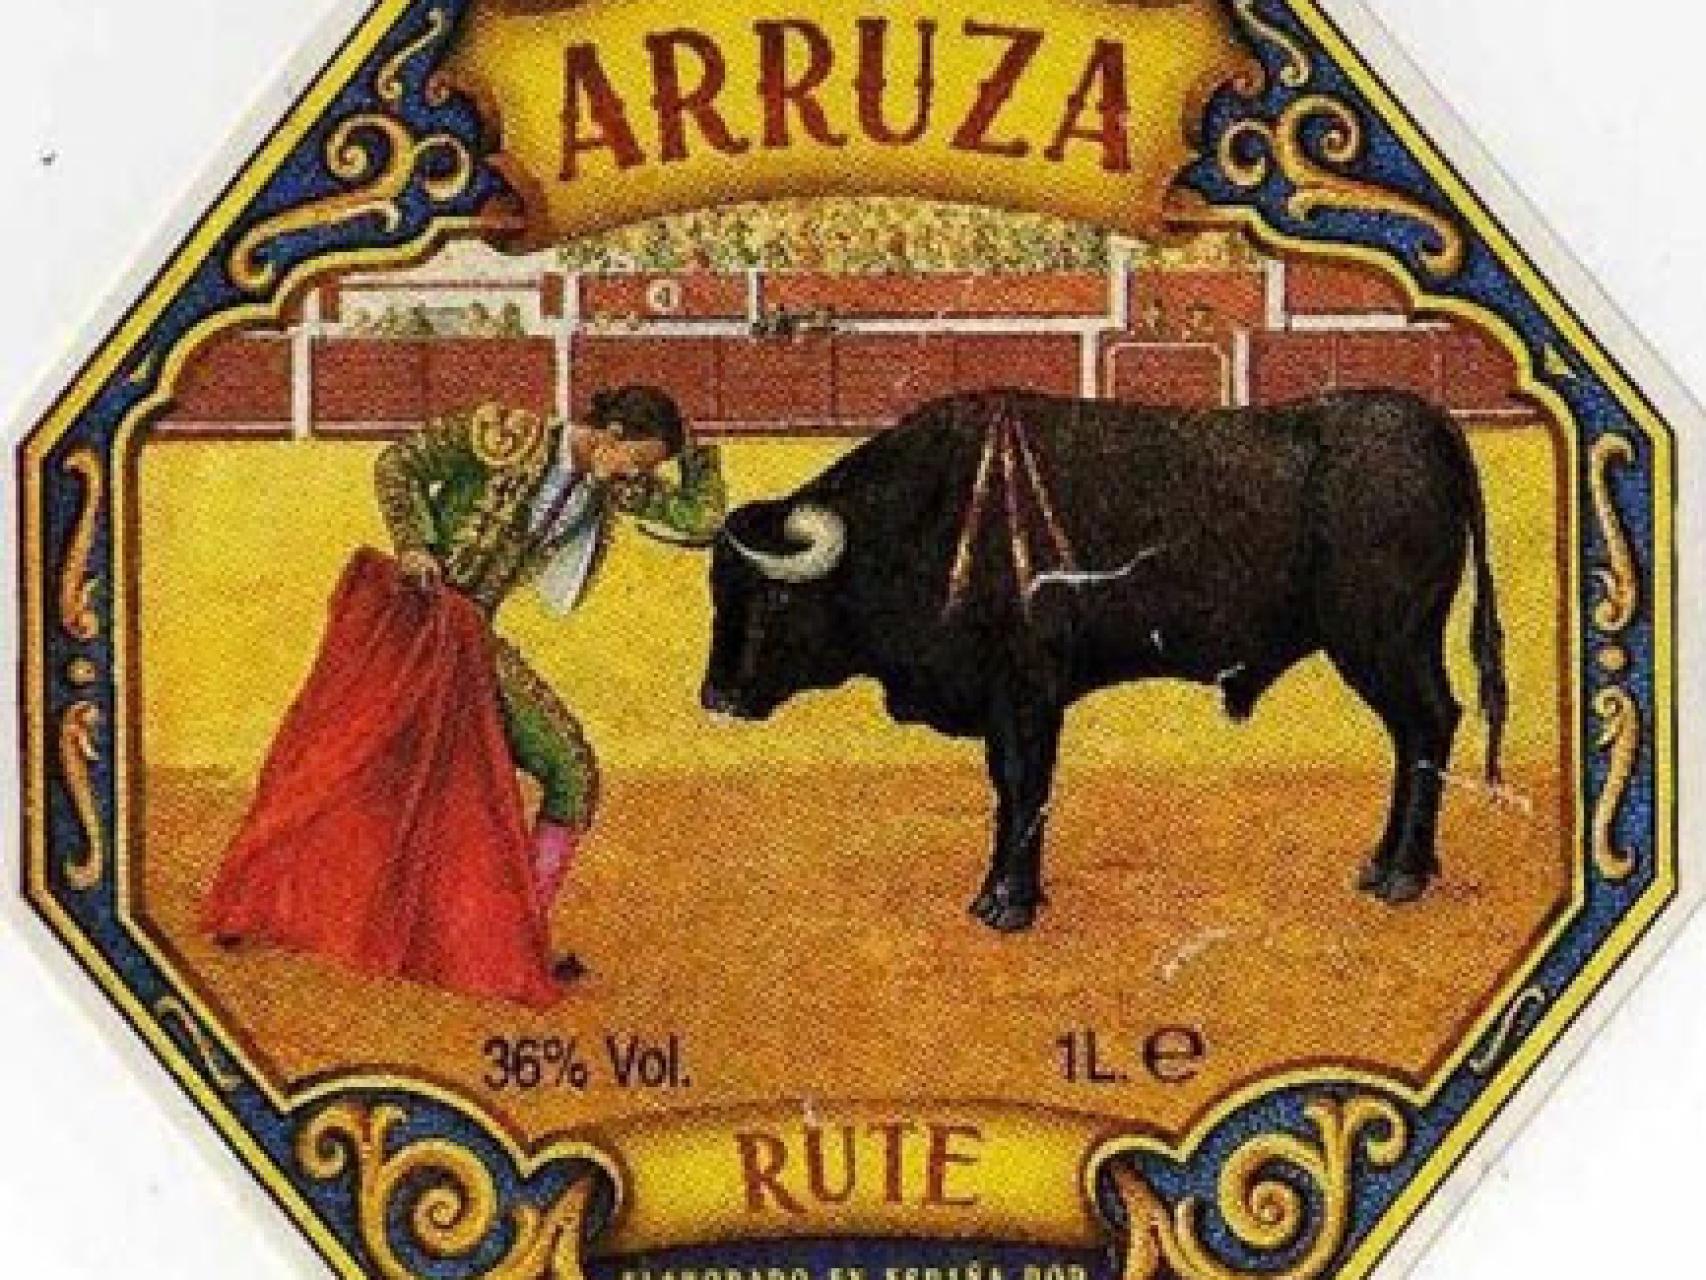 Arruza alcanzó tal popularidad que las firmas comerciales de la época diseñaron una etiqueta del famoso anís de la cordobesa Rute en honor al diestro mexicano